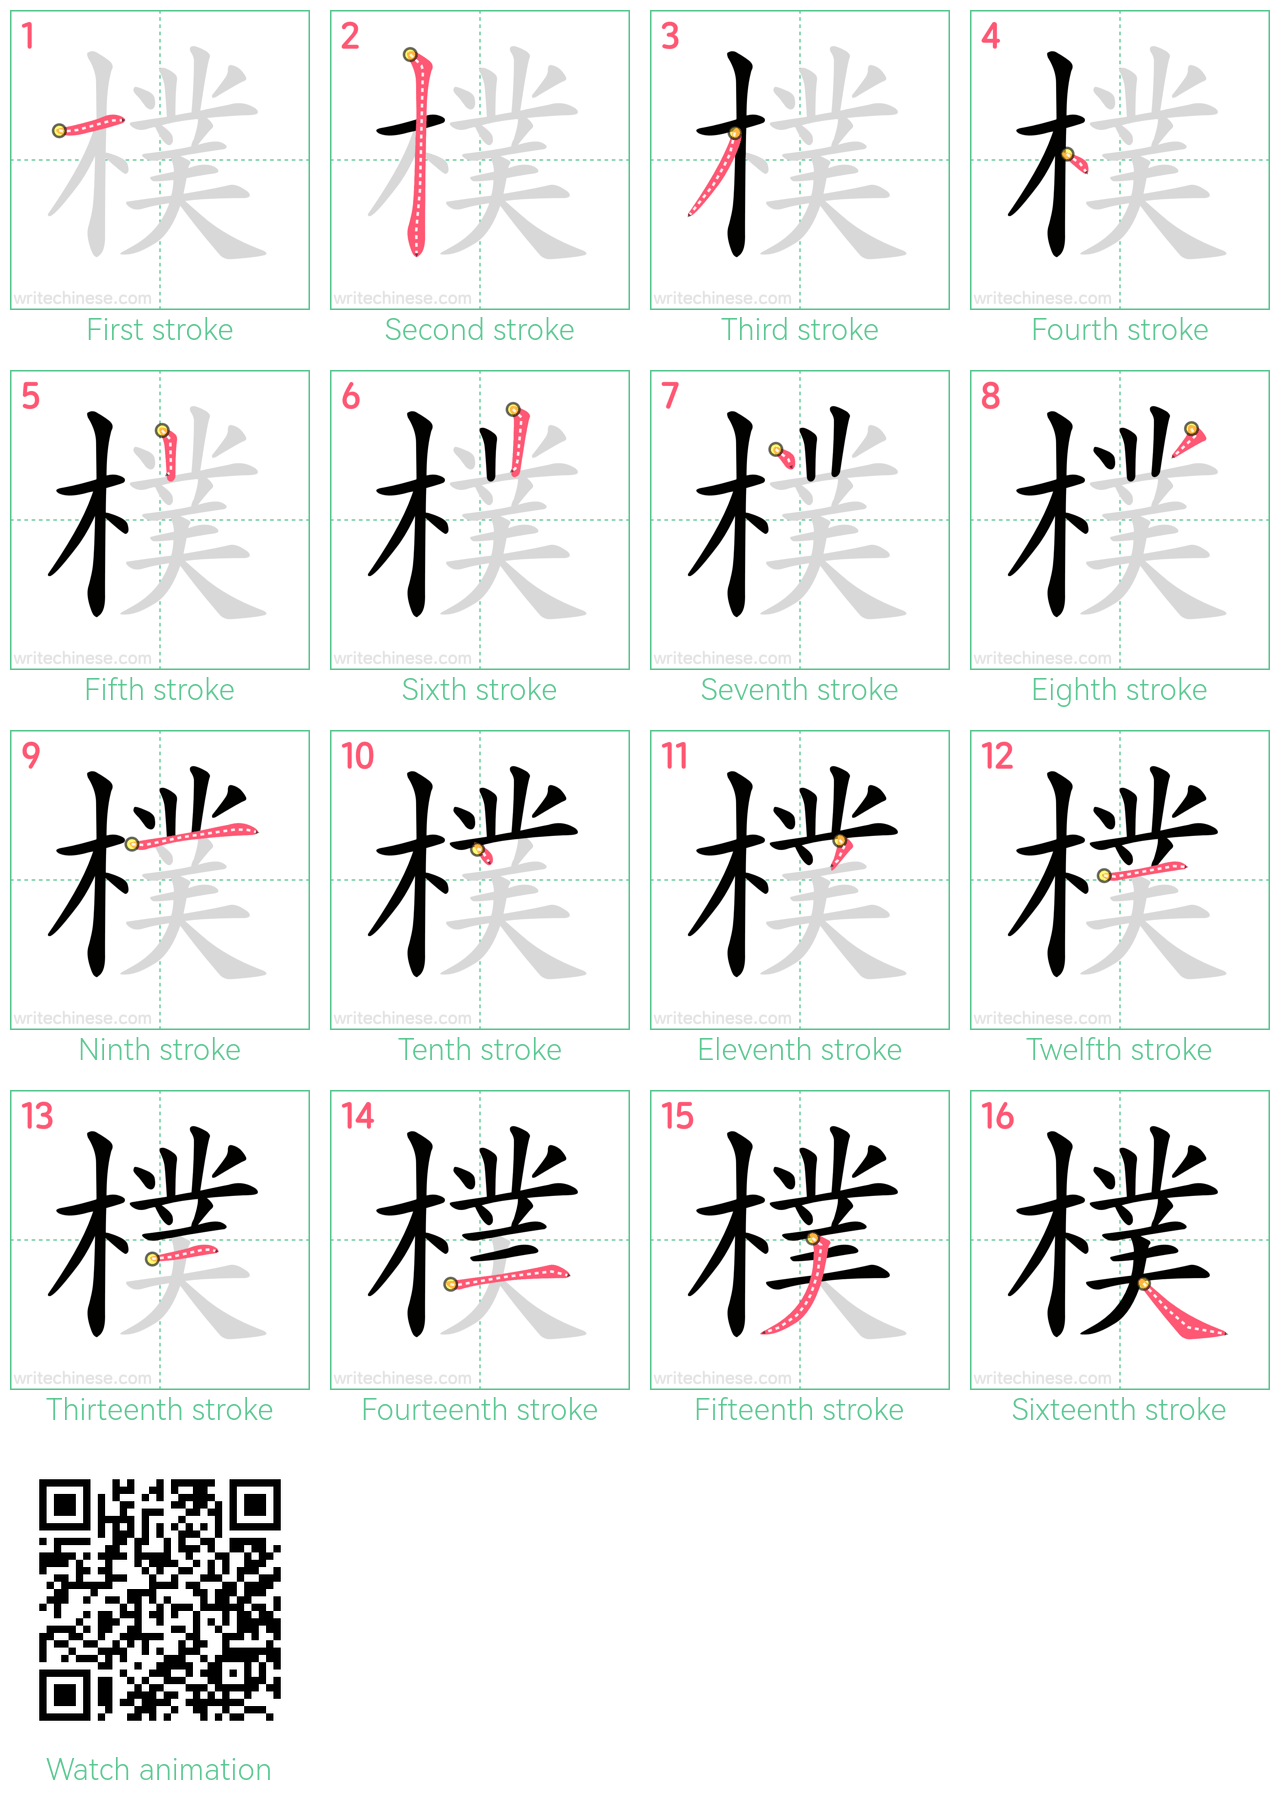 樸 step-by-step stroke order diagrams